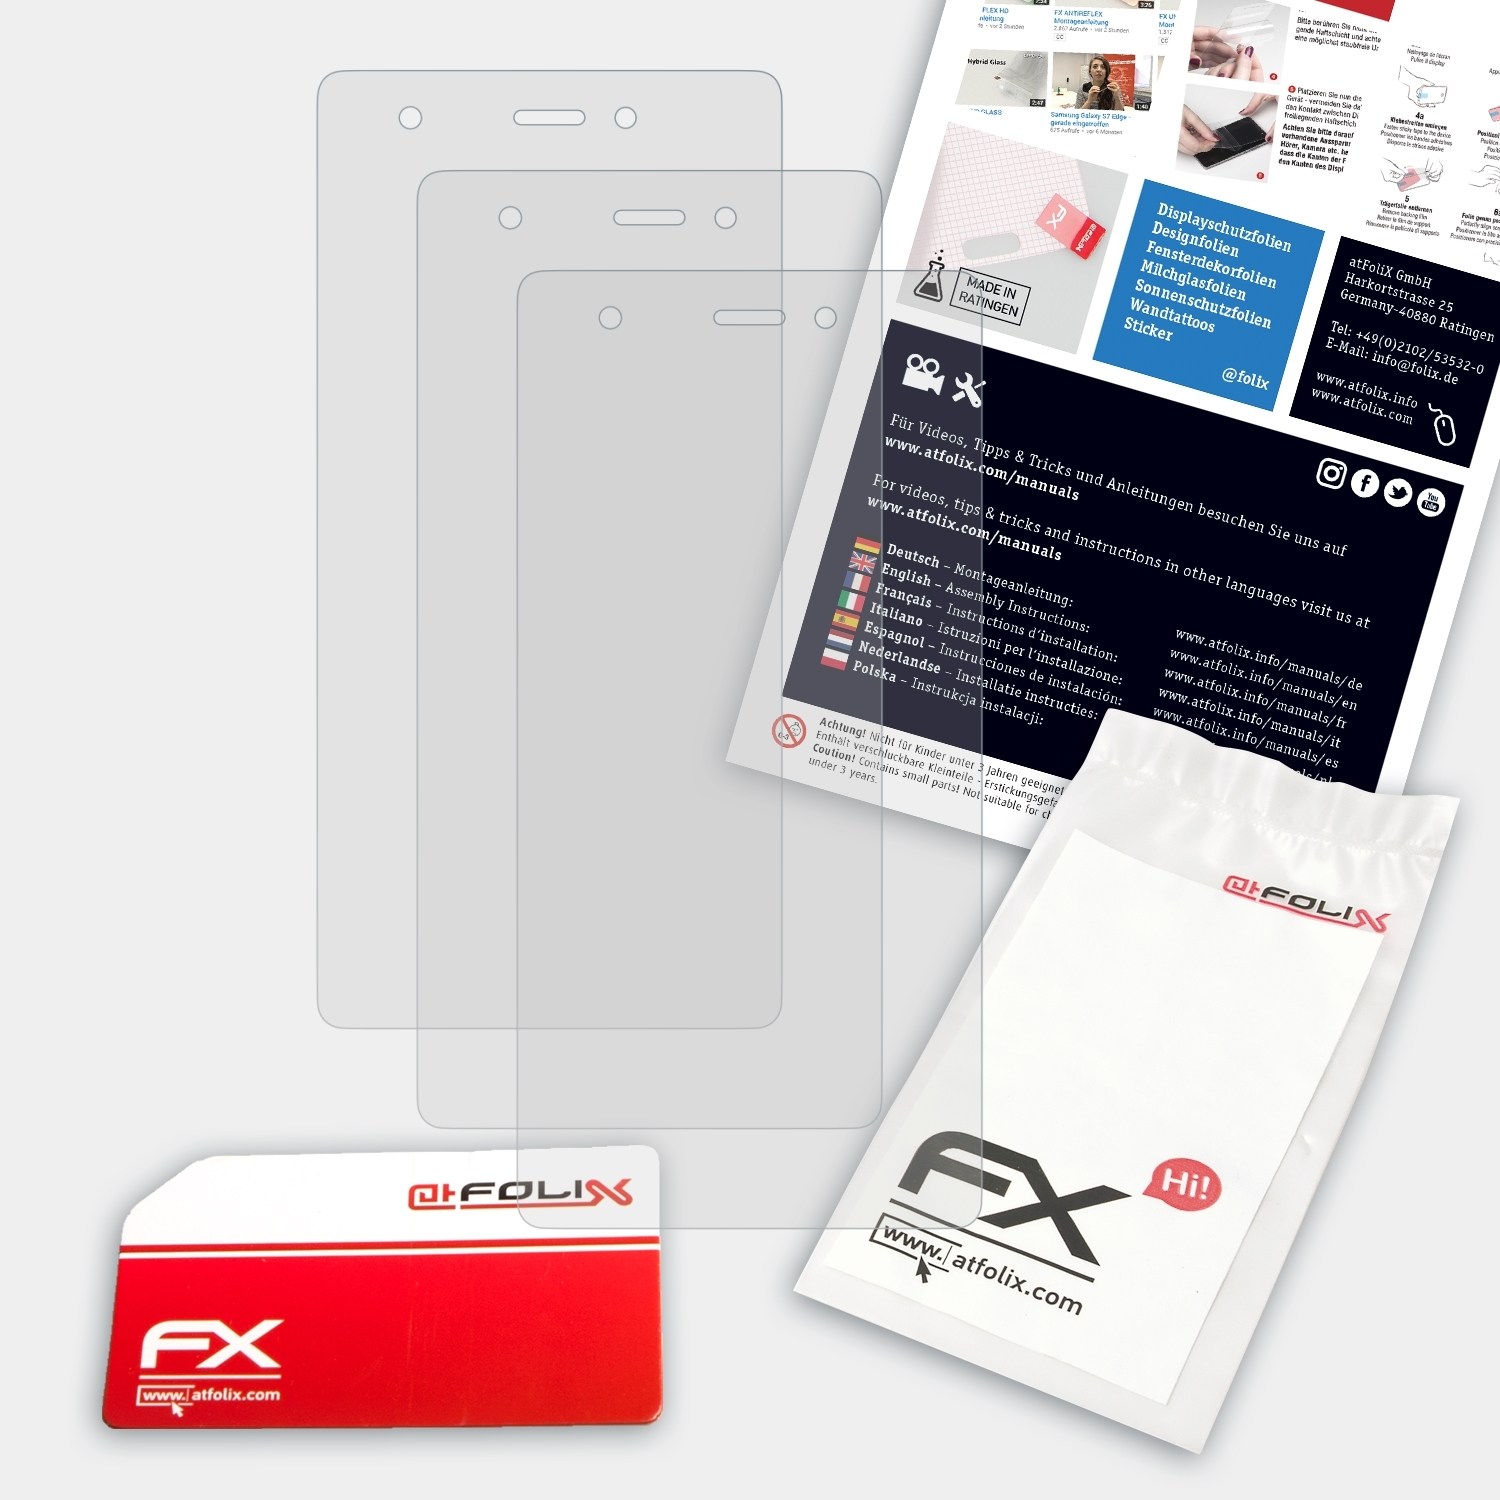 ATFOLIX 3x Wiko Pulp FX-Antireflex 4G) Displayschutz(für